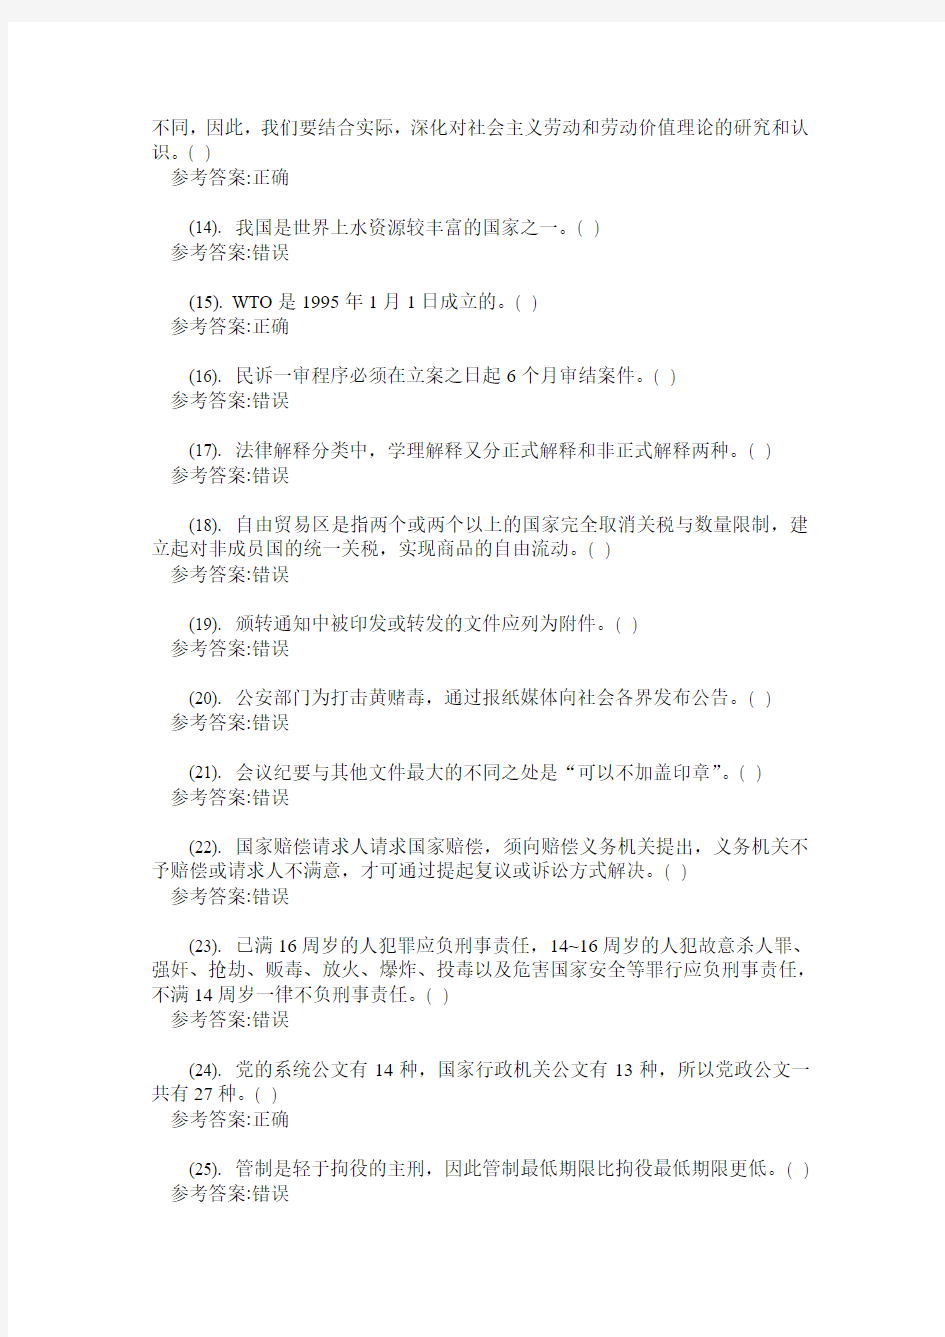 2011年上半年重庆市事业单位公开招(选)聘工作人员考试《综合基础知识》真题及答案